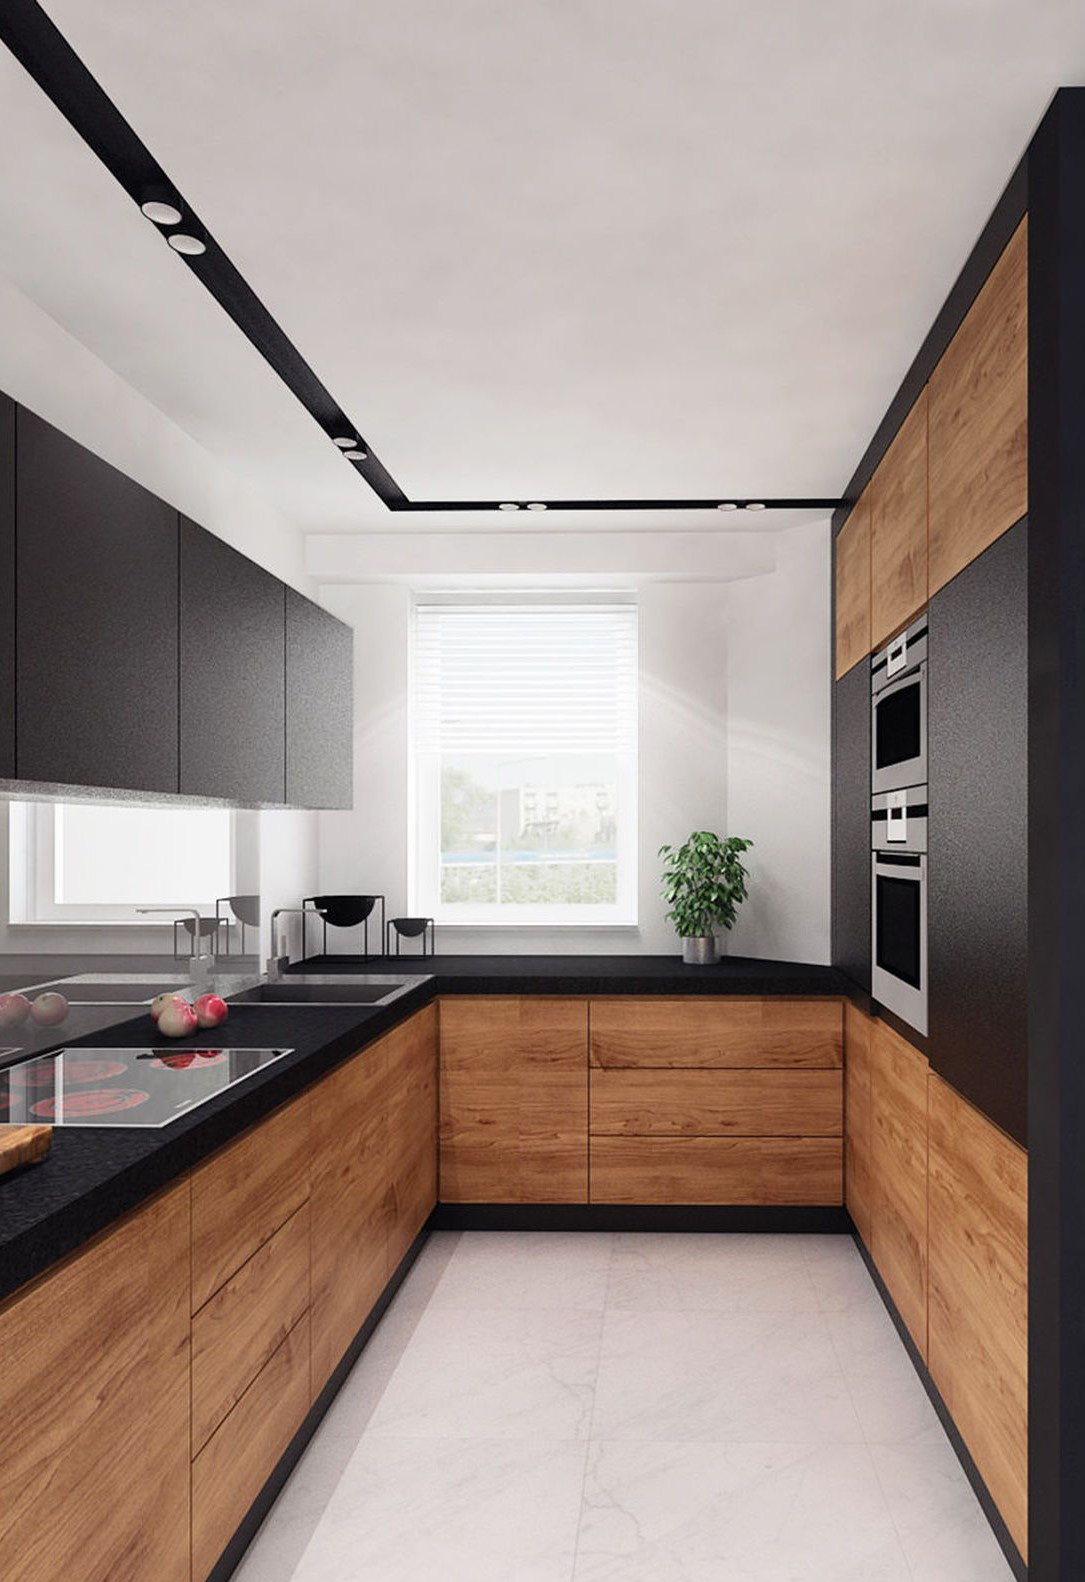  Tủ bếp nổi bật với gam màu đen và màu gỗ đậm.